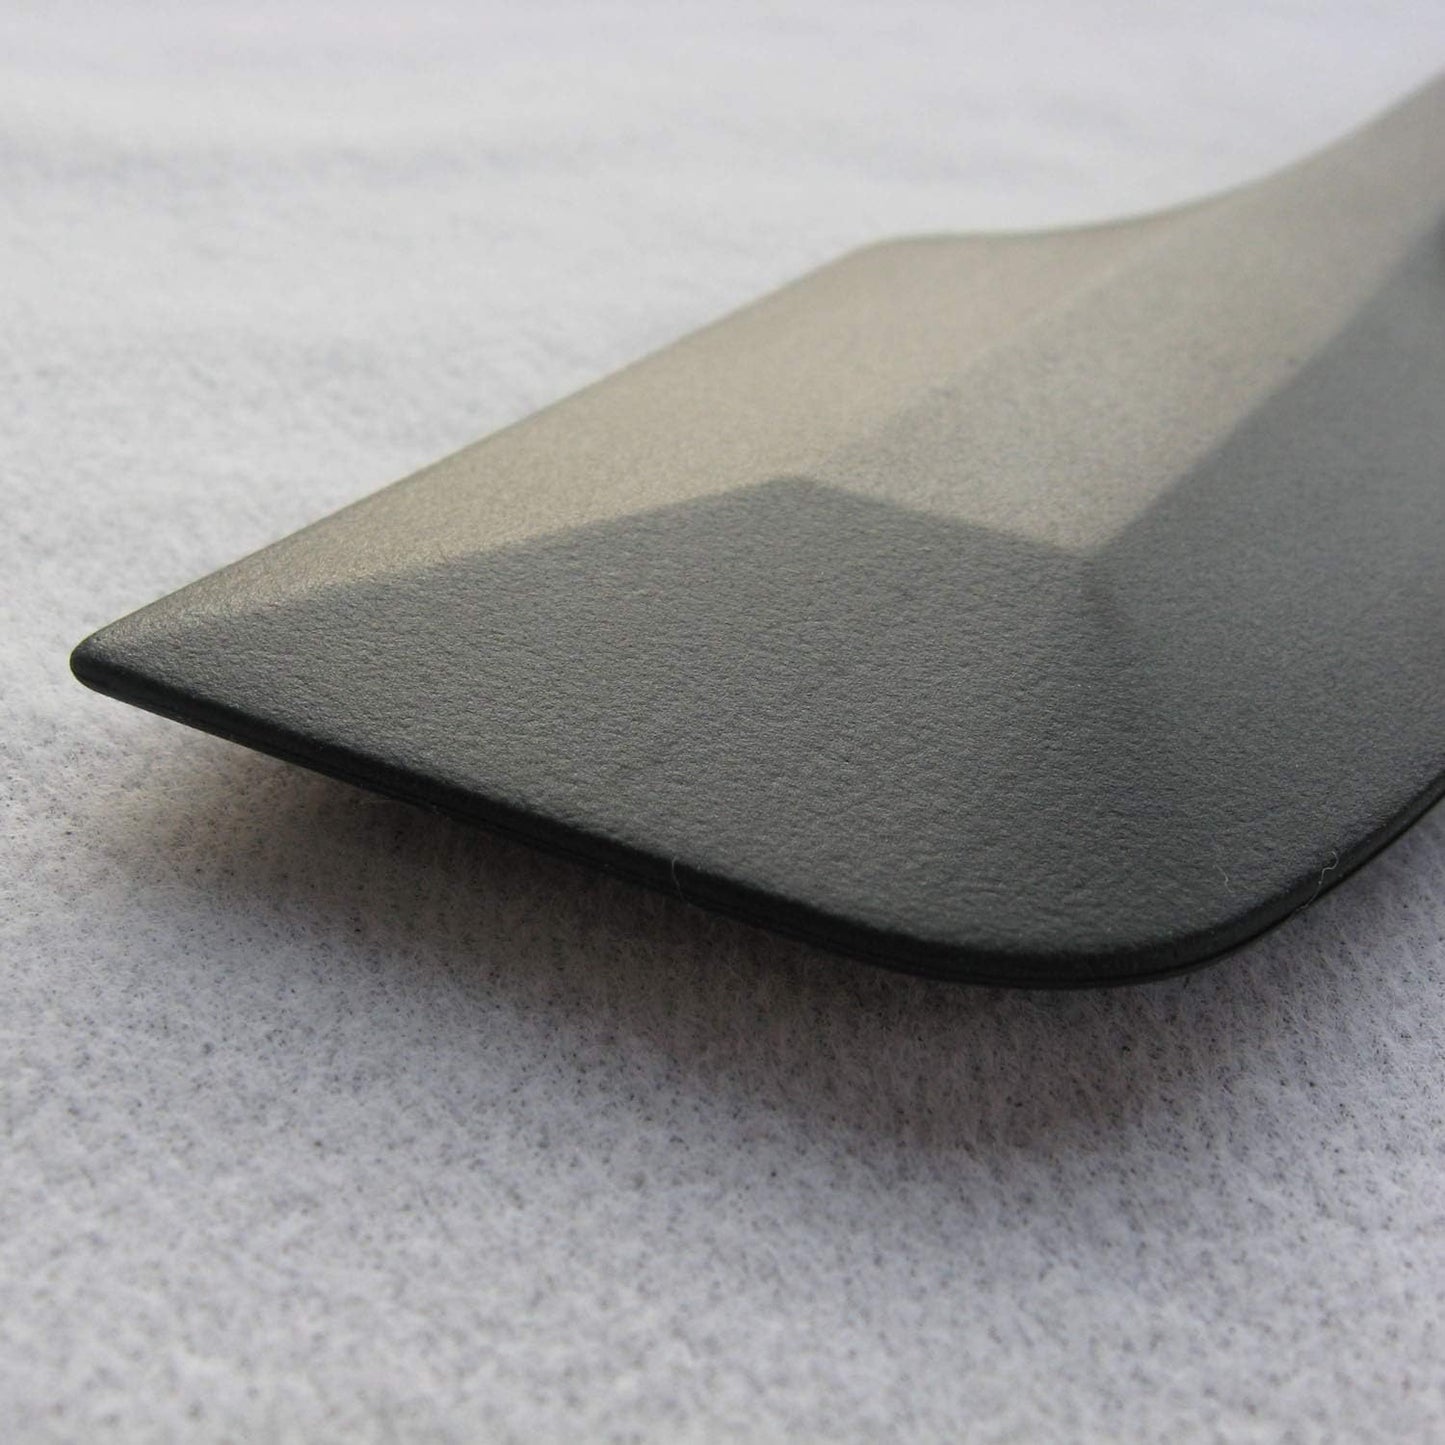 日本製橡膠抹刀 小 (2色選擇)